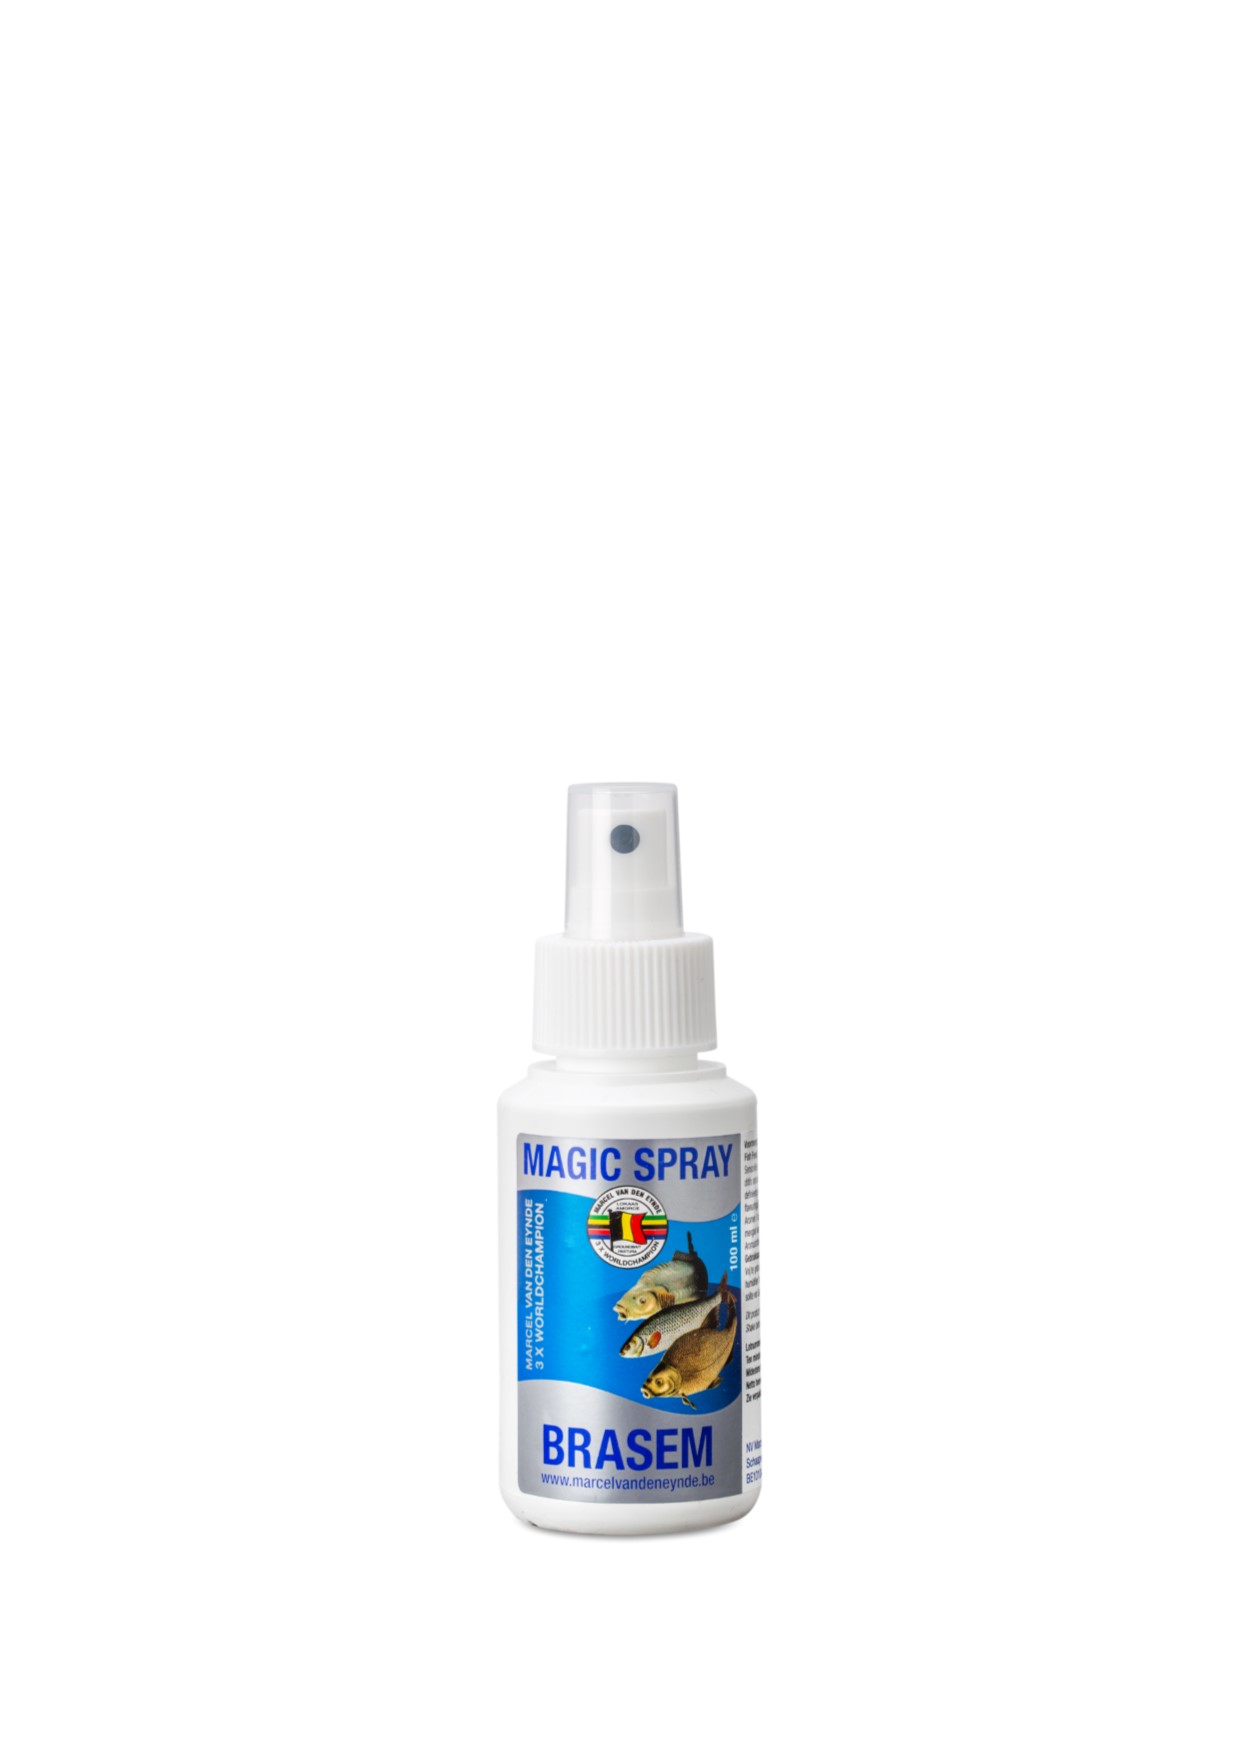 VDE Magic Spray Brasem 100 ml - Aditivi za miris i ukus mogu se koristiti na različite načine u ribolovnom sportu. Svrha je da se mamac učini privlačnijim za ribu. Takođe se može koristiti za povećanje atraktivnosti na udicu. Sistem za prskanje je adekvatan za ovu svrhu. Upotreba je vrlo jednostavna, možete prskati mamac na udici odmah nakon što stavite mamac na nju. Cijena: 10 BAM